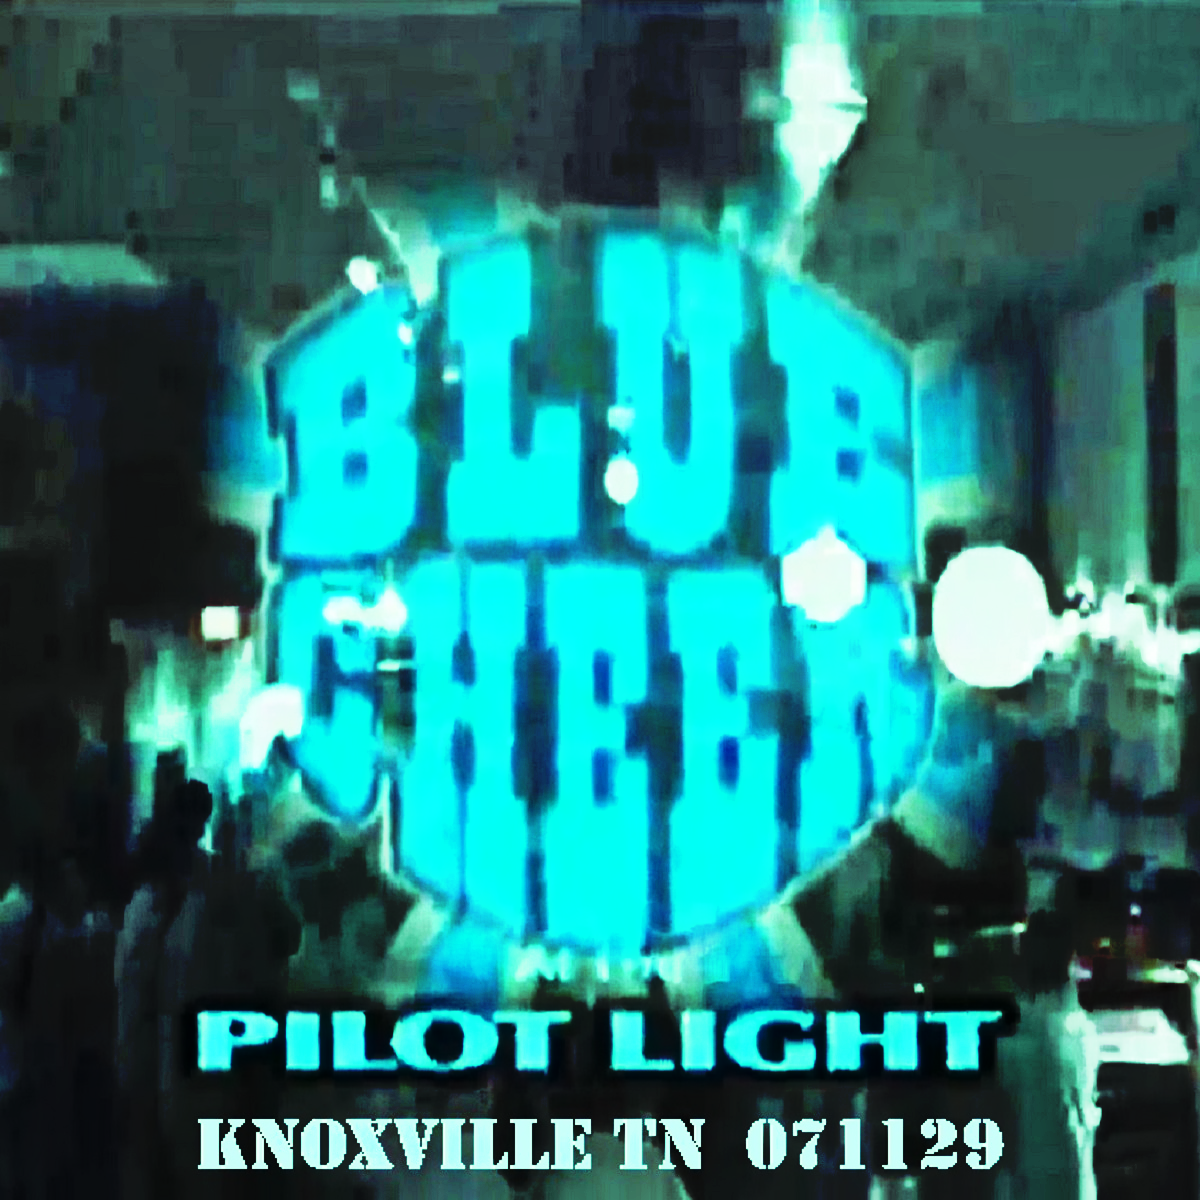 BlueCheer2007-11-29PilotLightKnoxvilleTN (2).png